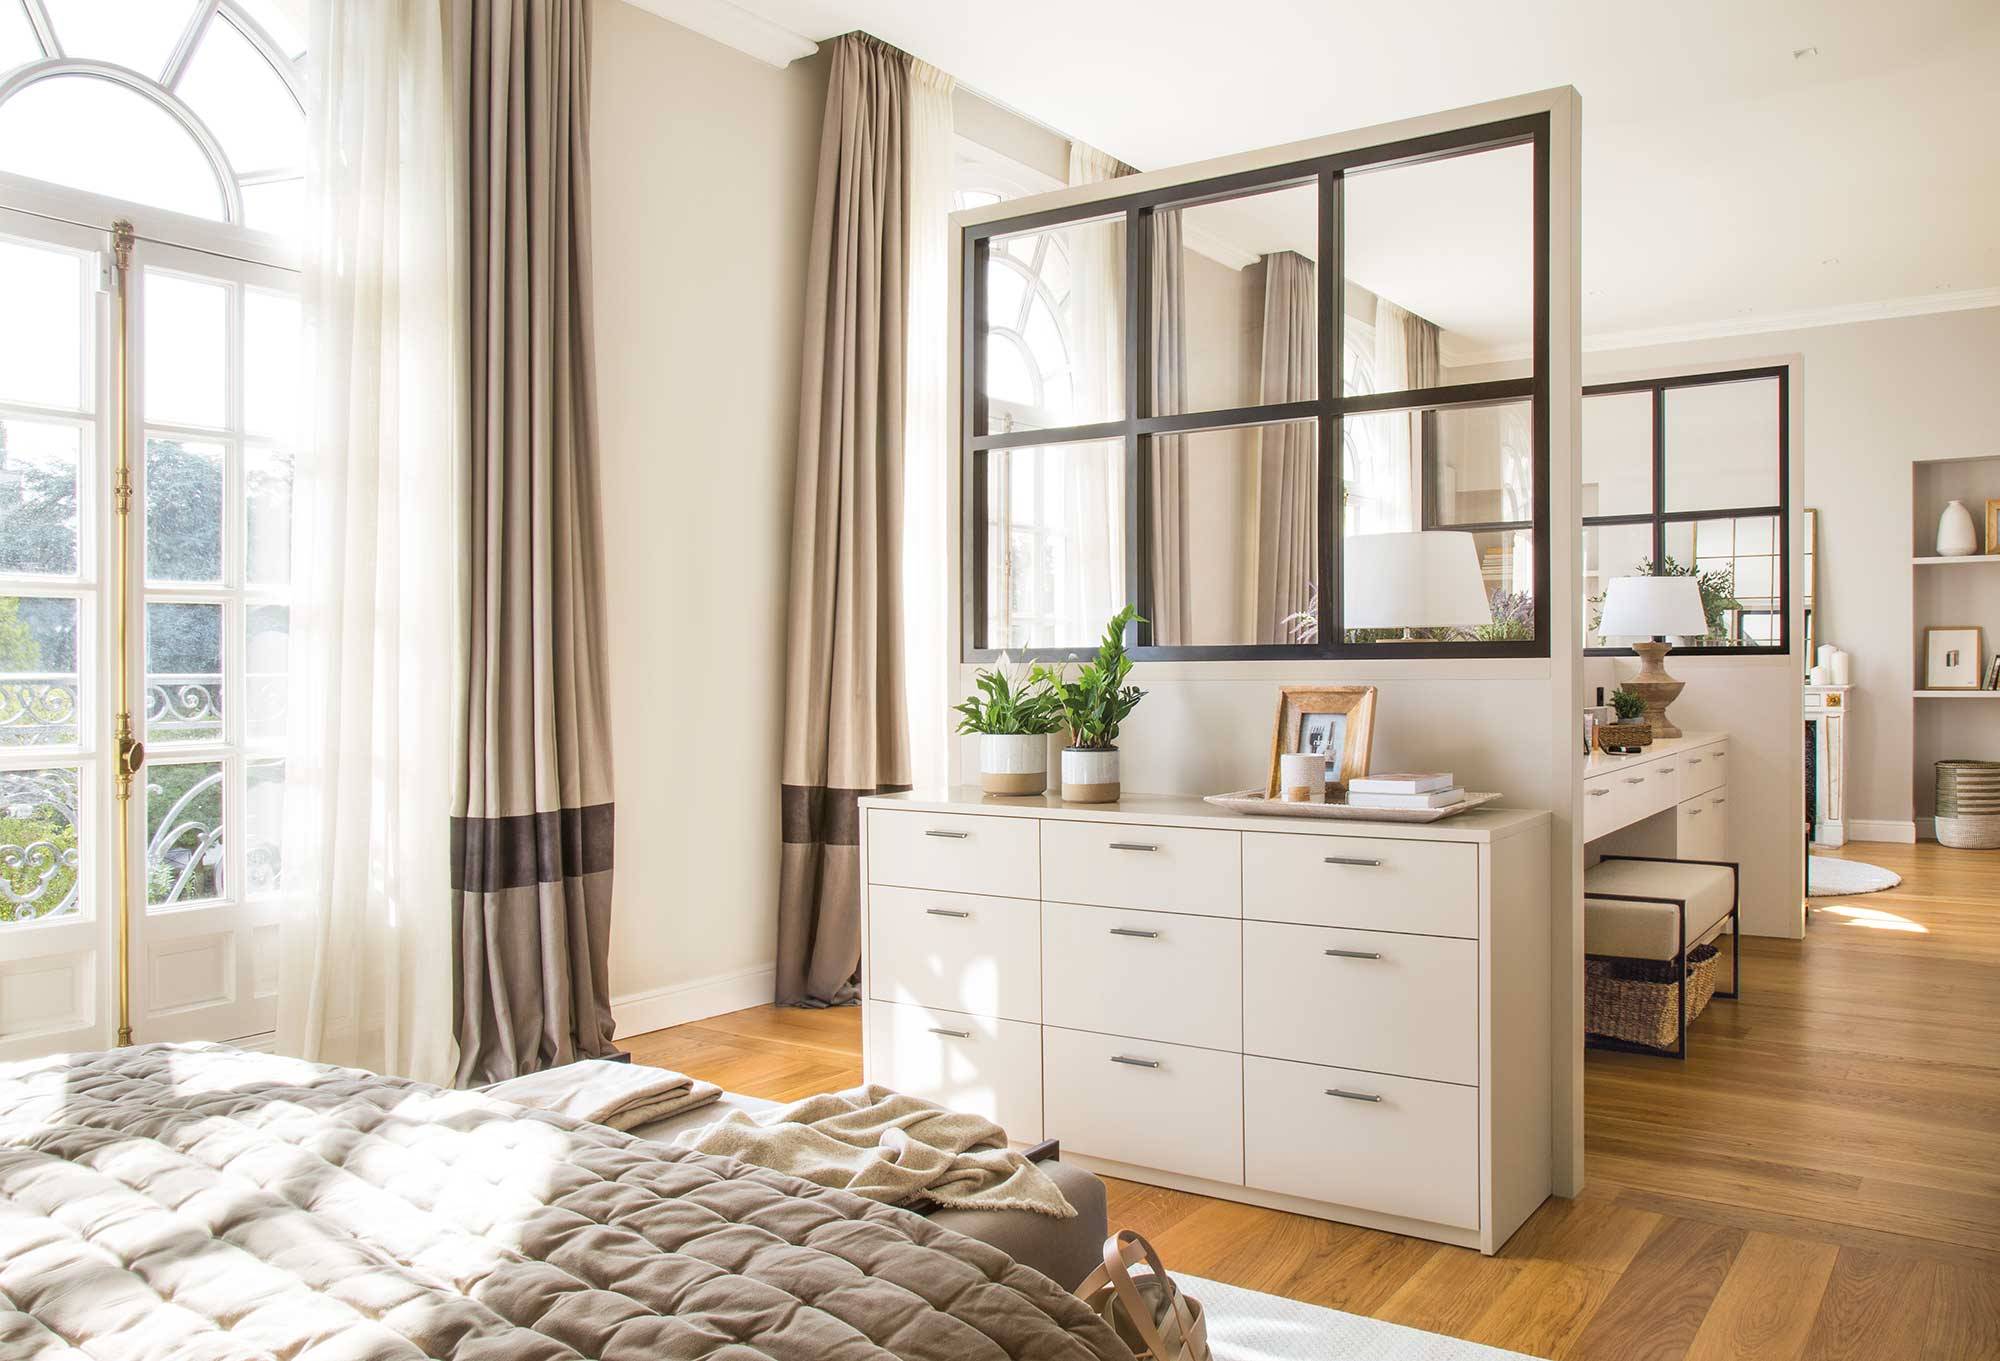 Antes y después: 5 dormitorios transformados por Pia Capdevila